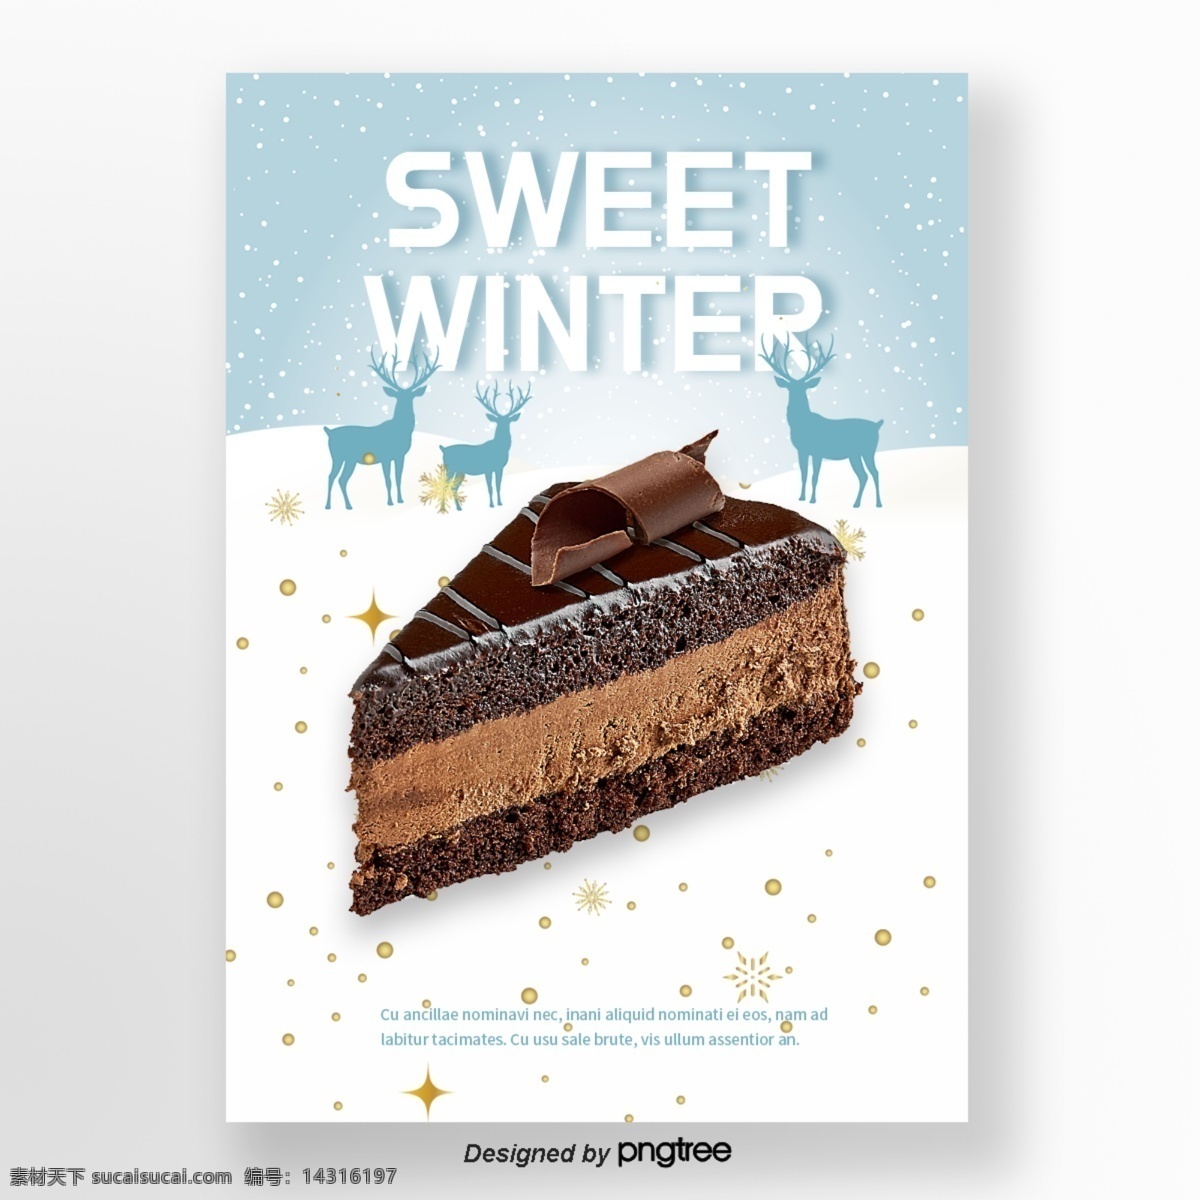 蓝色 圣诞节 礼物 咖啡 巧克力 蛋糕 冬季 甜味 食品 海报 n 冬天 雪花儿 四尊